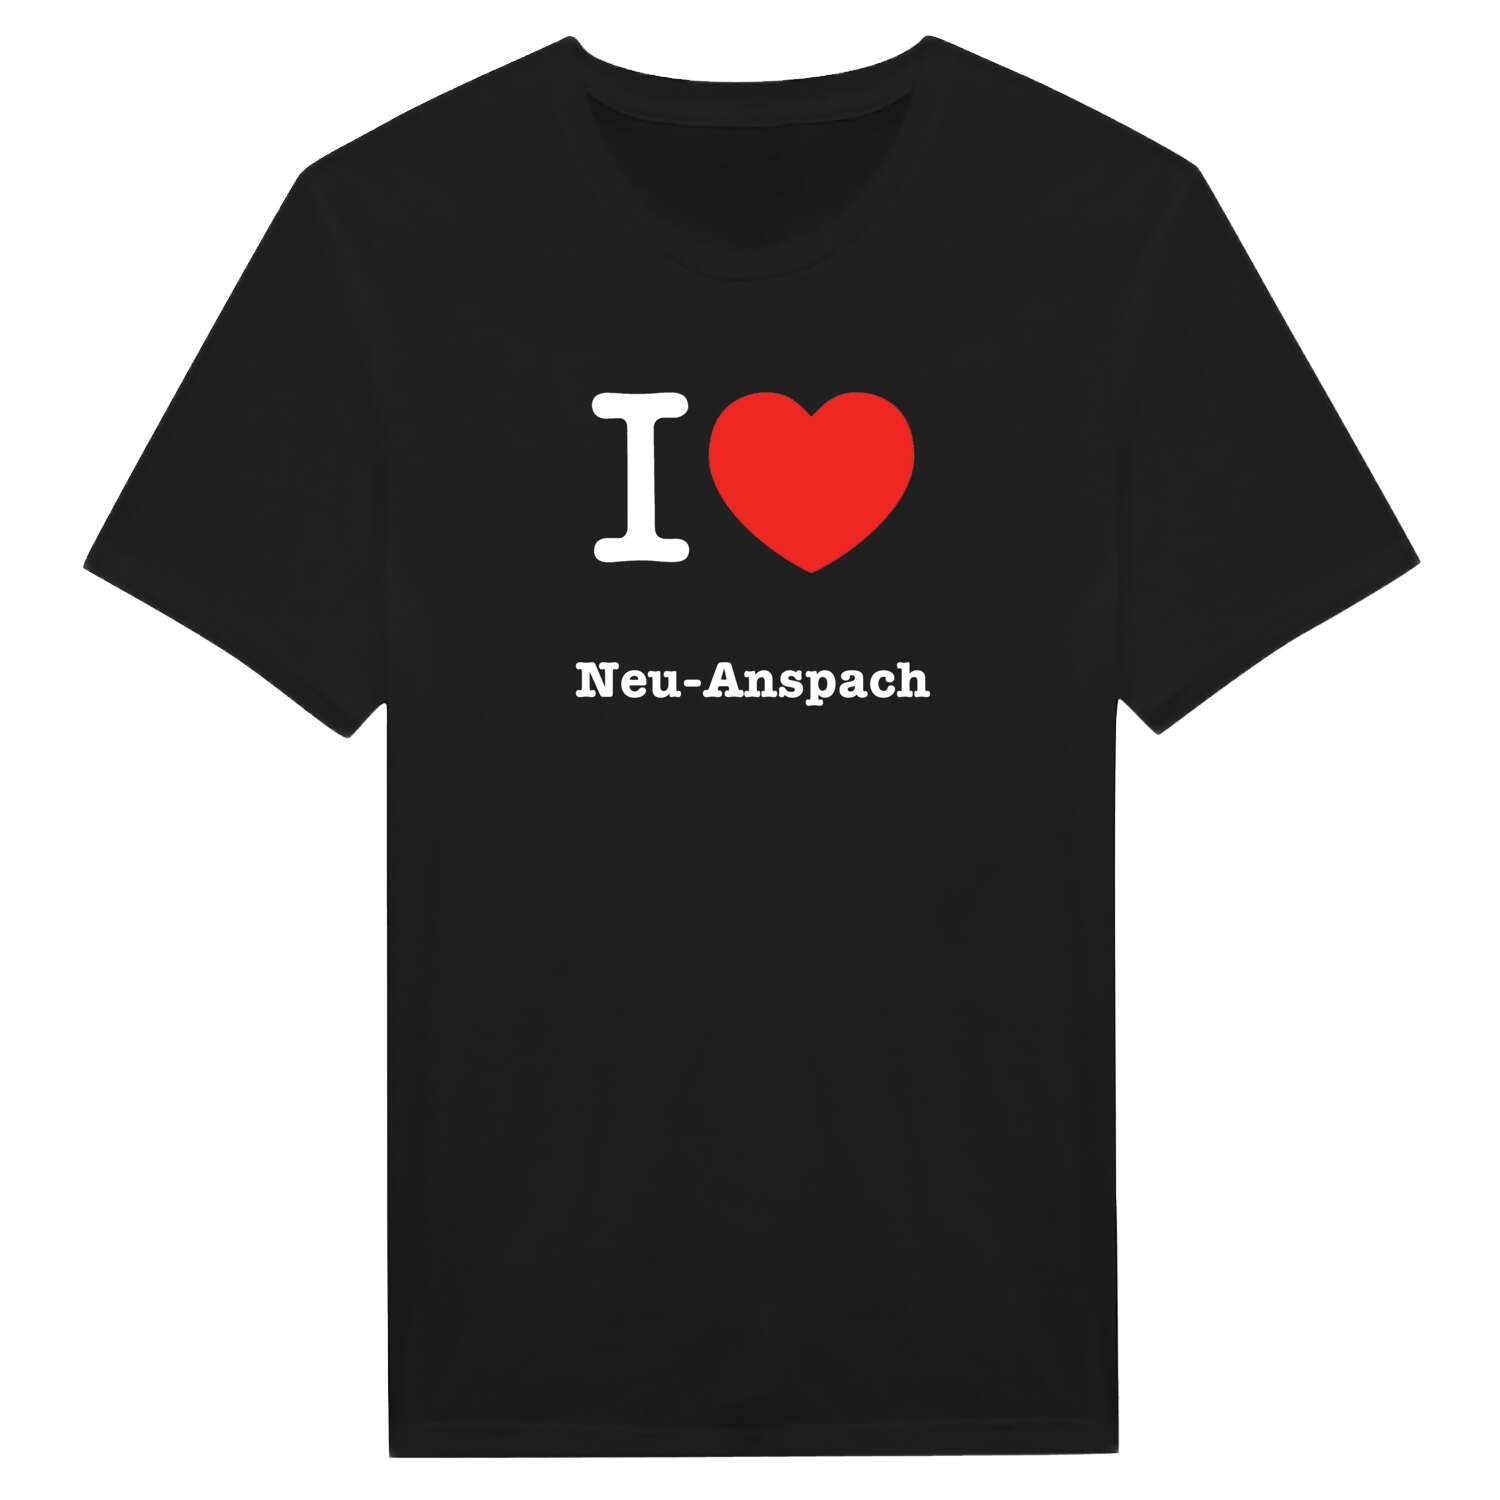 Neu-Anspach T-Shirt »I love«